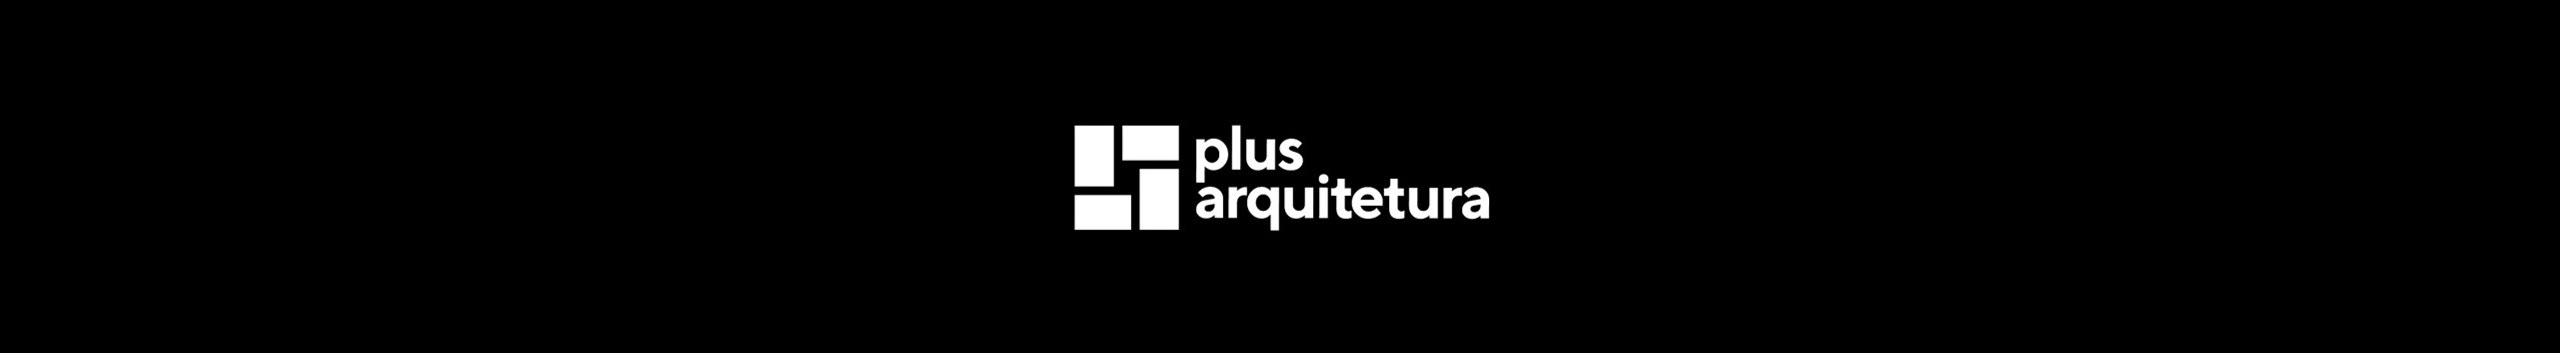 PLUS arquitetura's profile banner